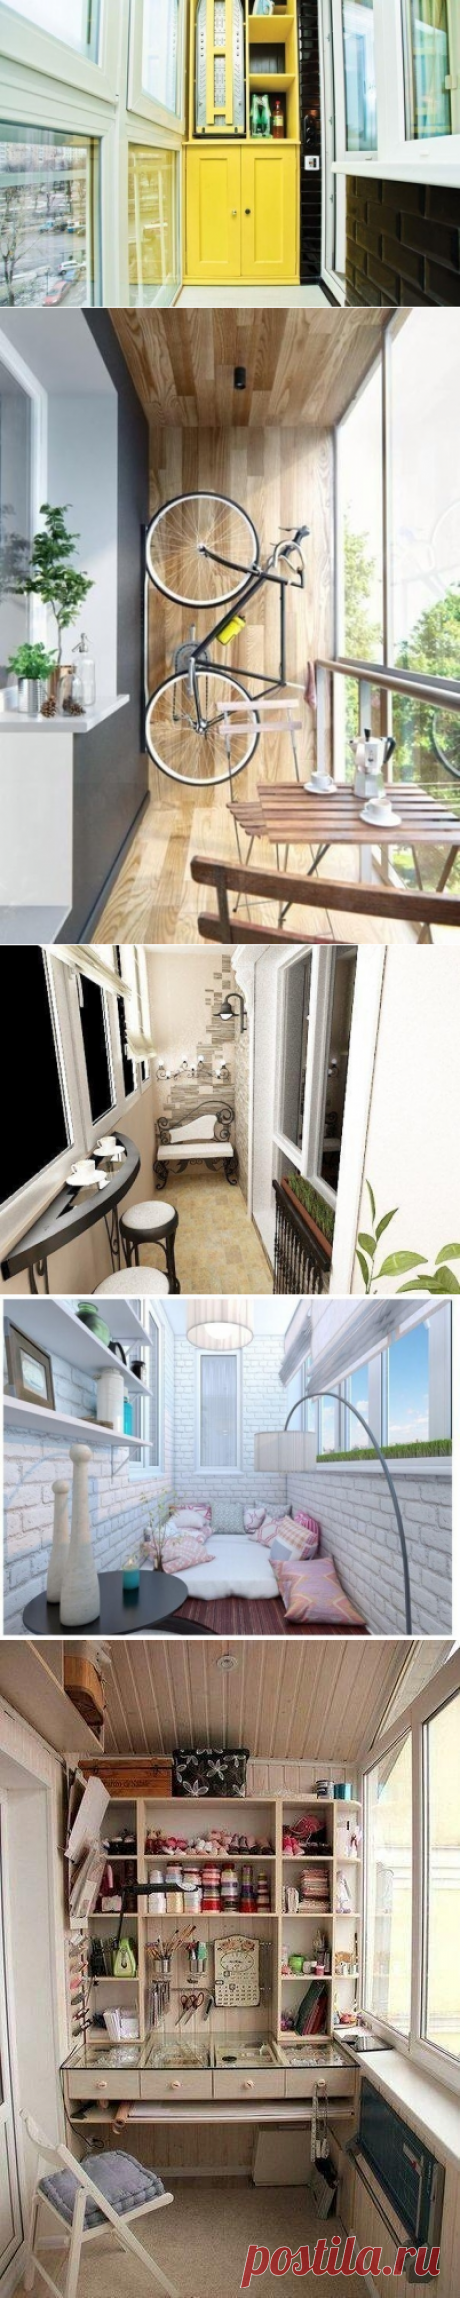 Идеи оформления балкона/лоджии - Дизайн интерьеров | Идеи вашего дома | Lodgers